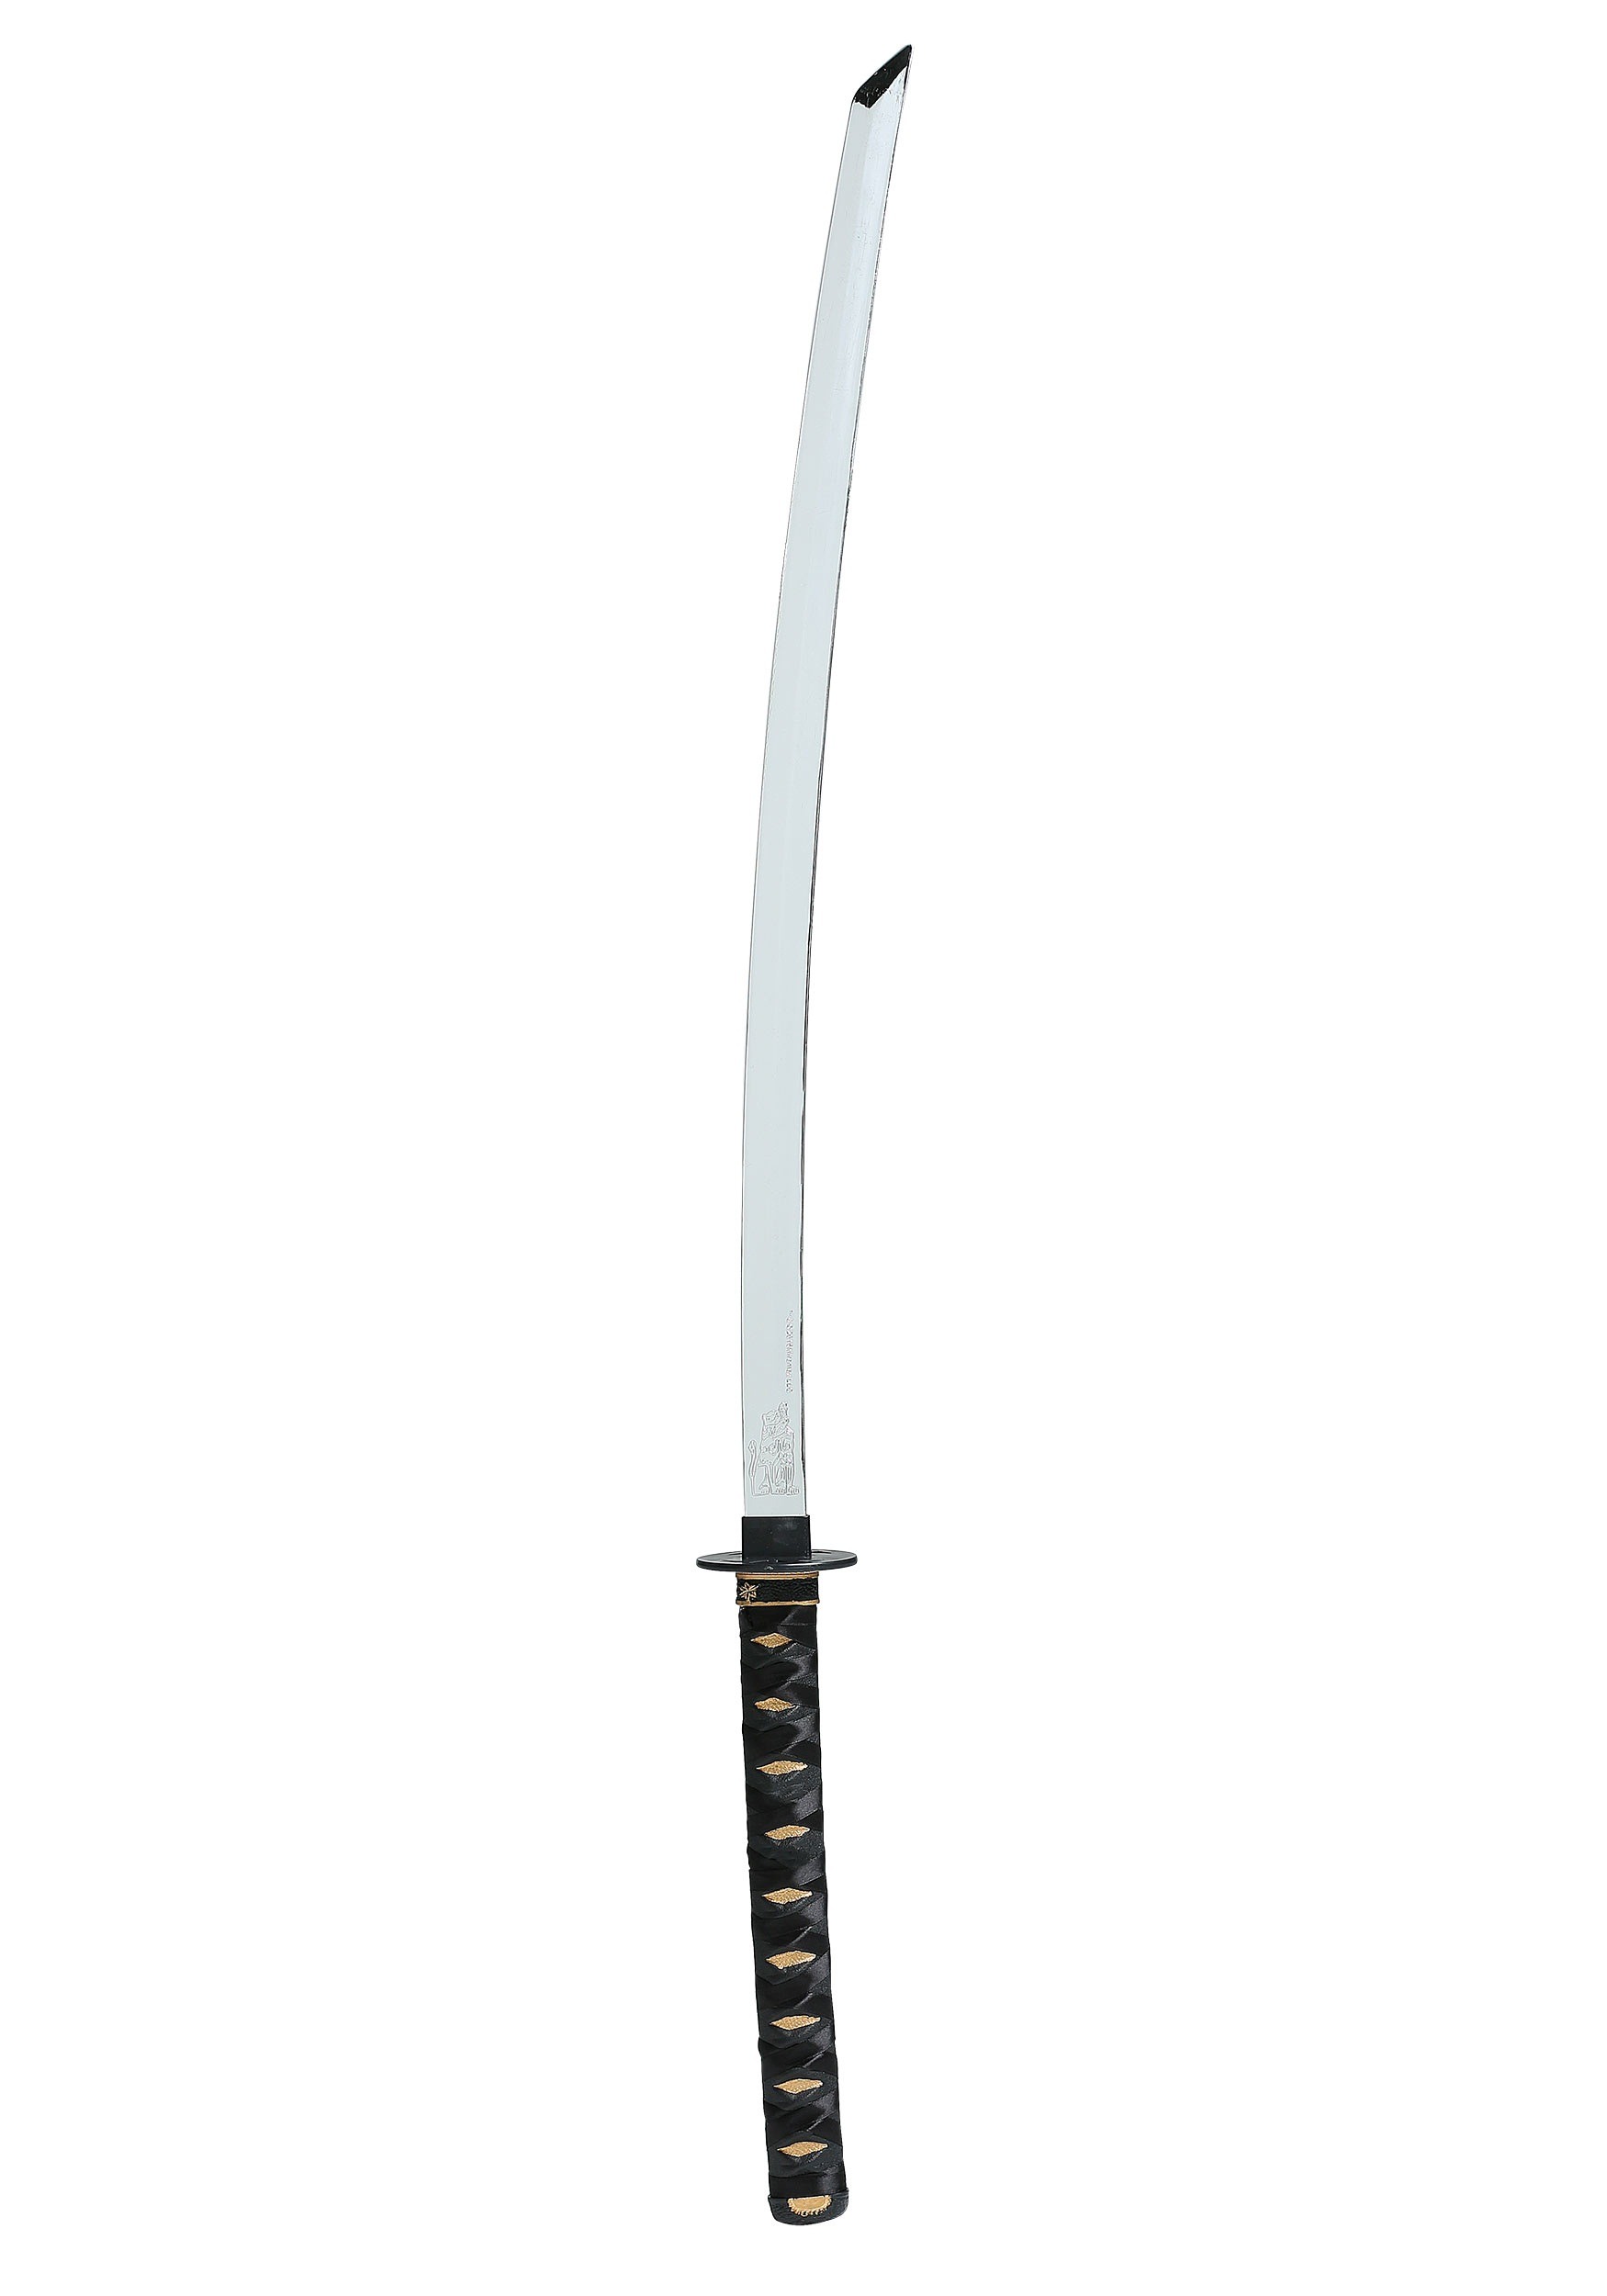 Hattori Hanzo Sword from Kill Bill